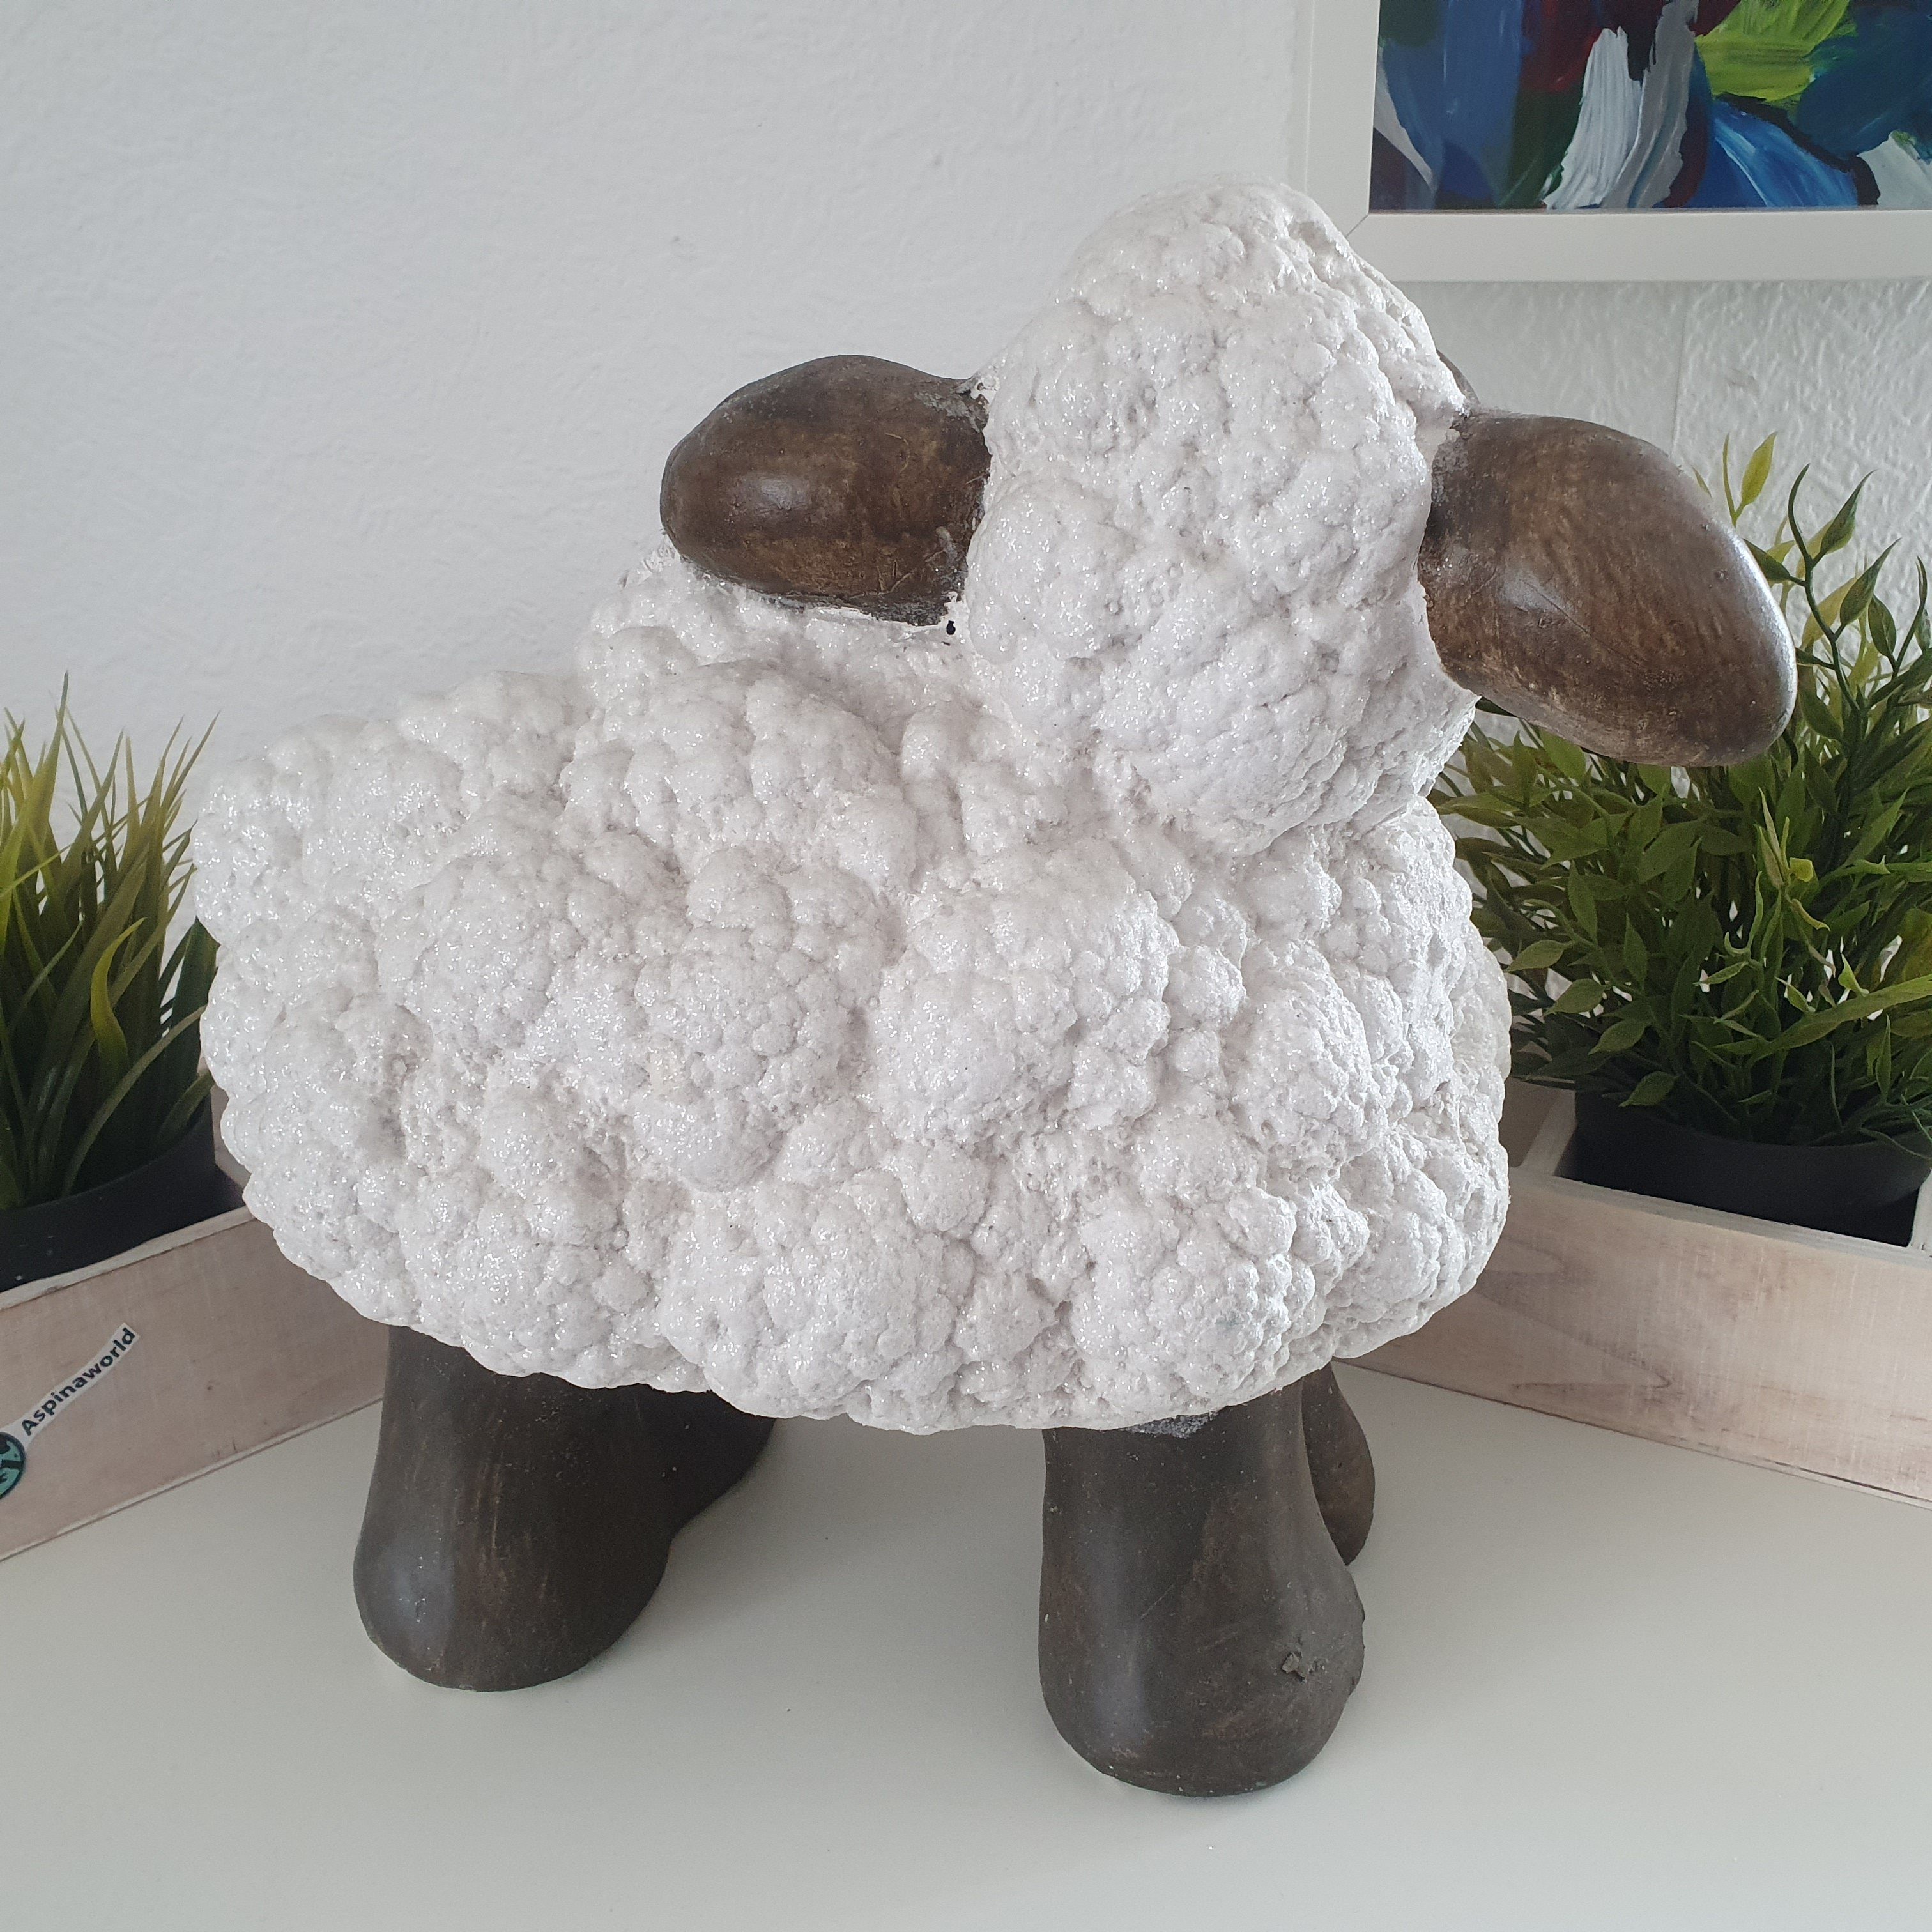 Aspinaworld Dekofigur Dekofigur weiße cm stehende Figur 32 Schaf große